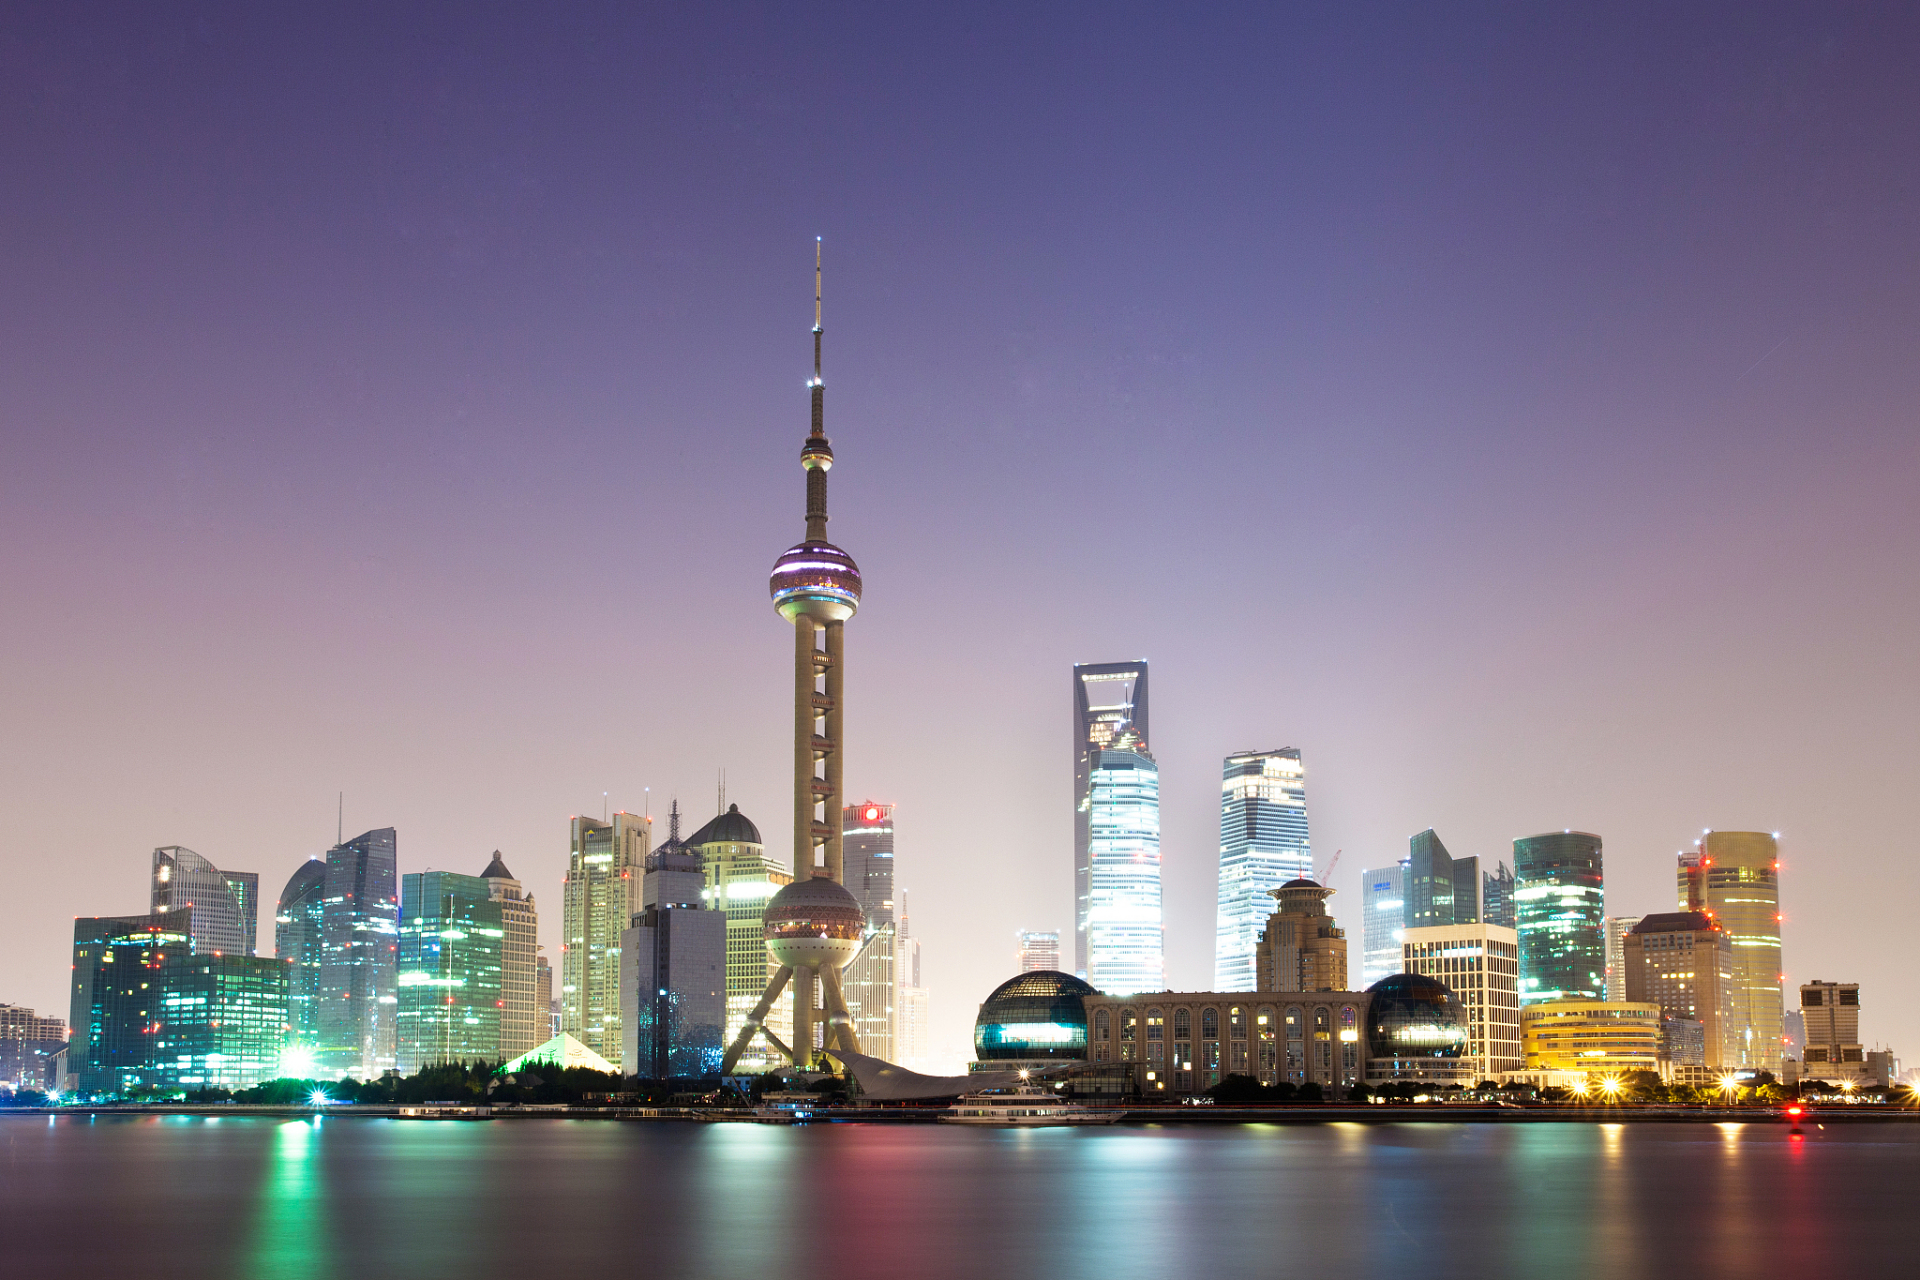 上海东方明珠塔,位于上海市浦东新区陆家嘴金融贸易区,是上海的标志性